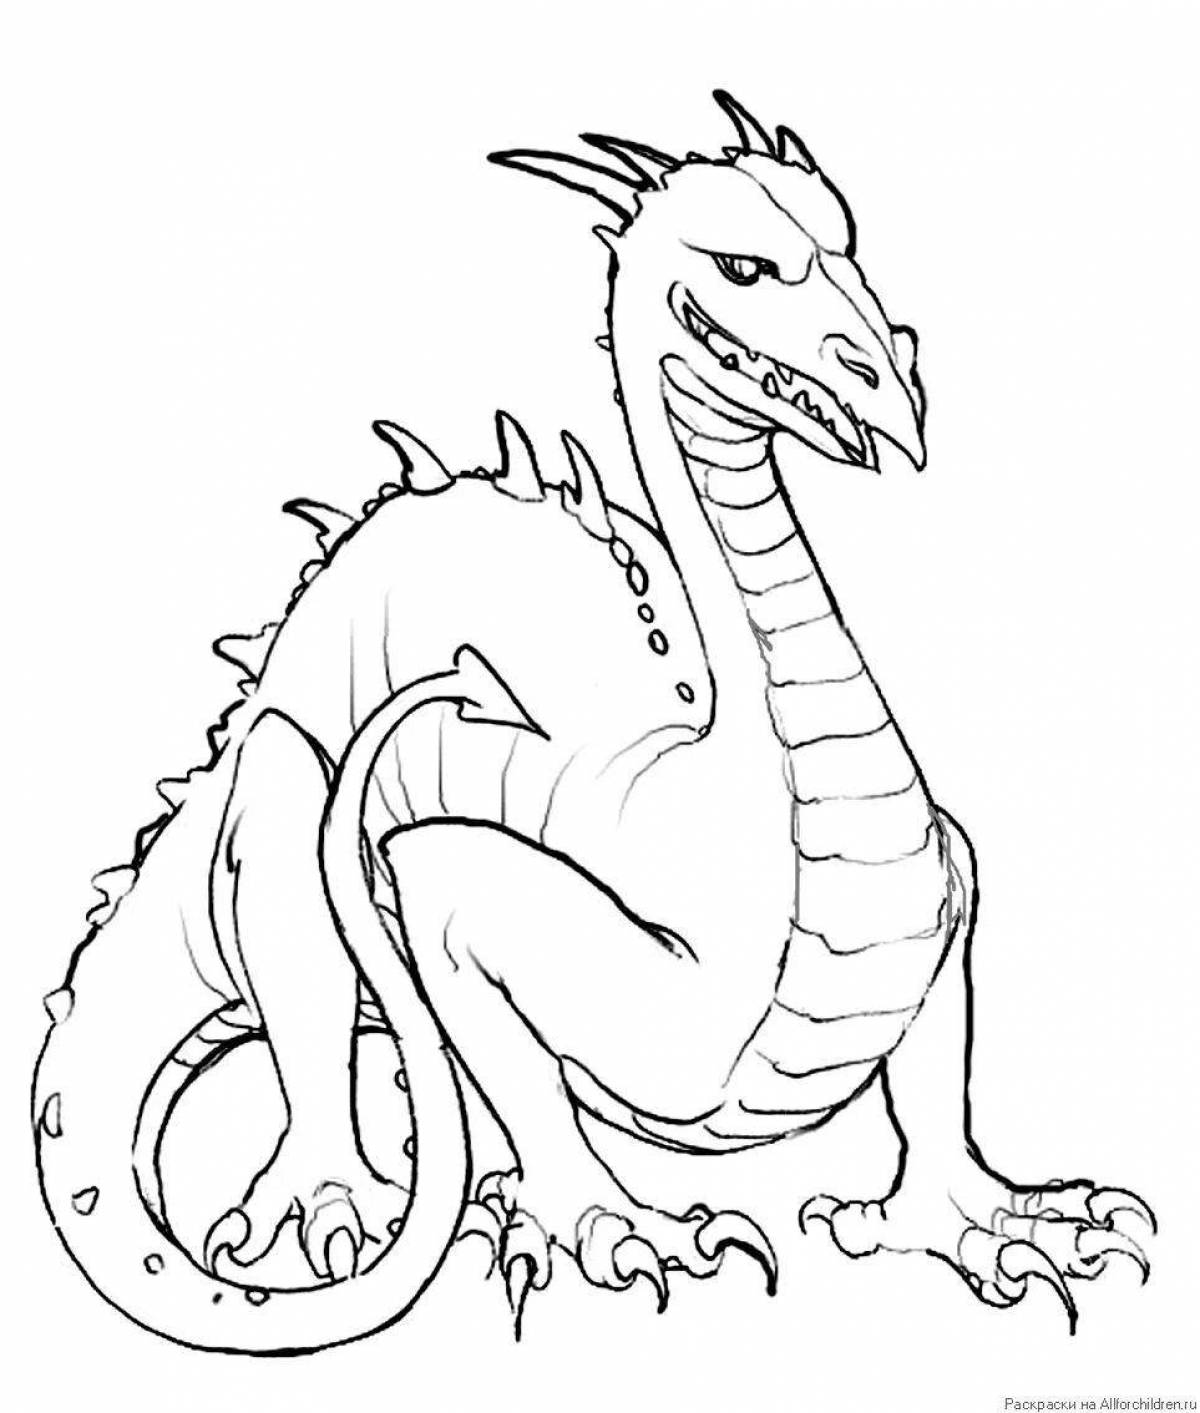 Страшная раскраска рисунок дракона